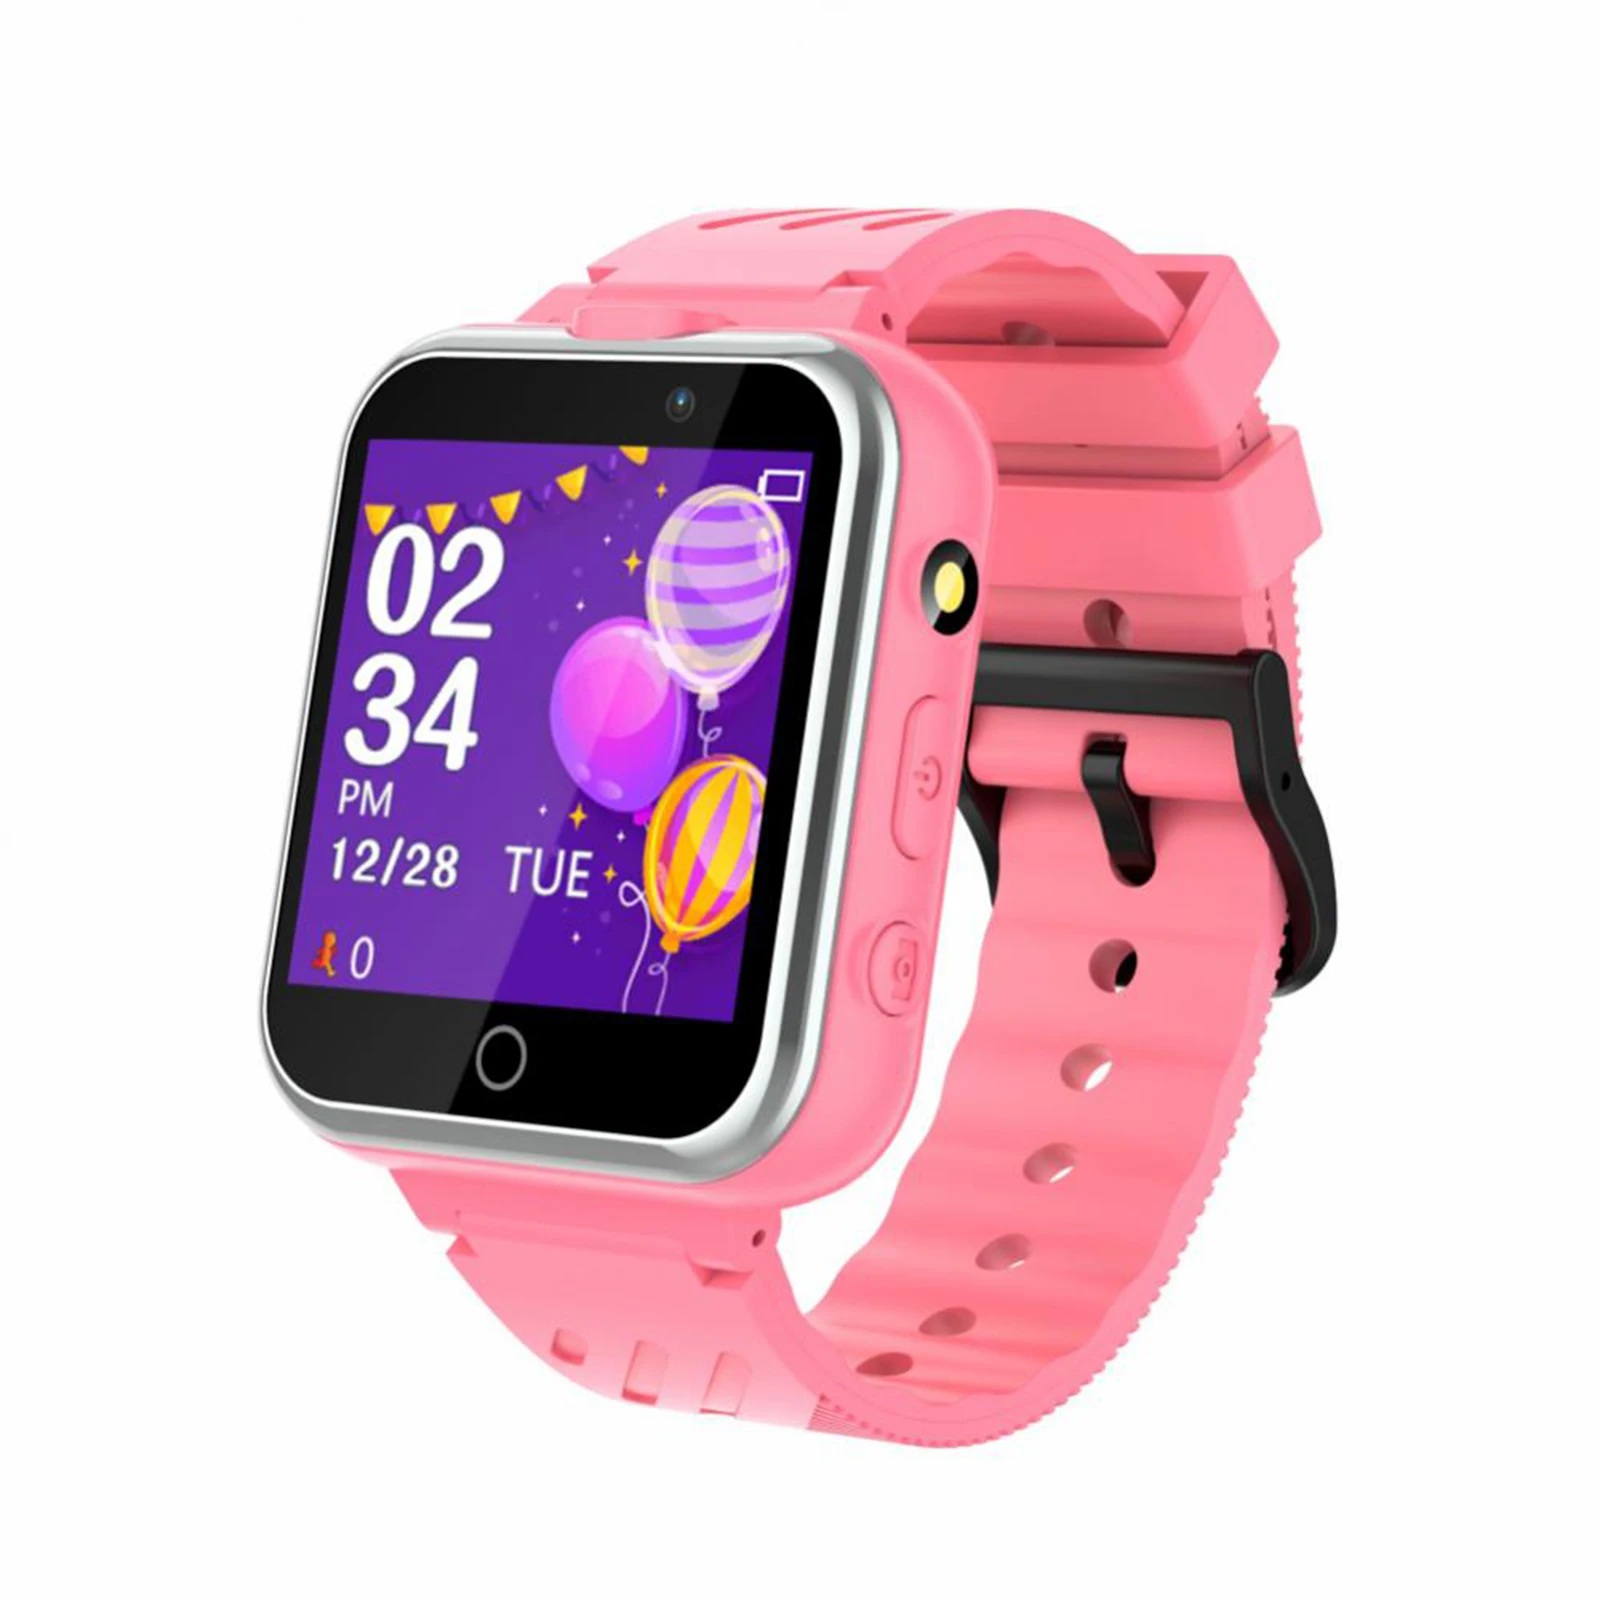 

Умные часы для детей многофункциональные встроенные 24 игры SD карта двойная камера Сенсорный экран розовые спортивные часы для телефона